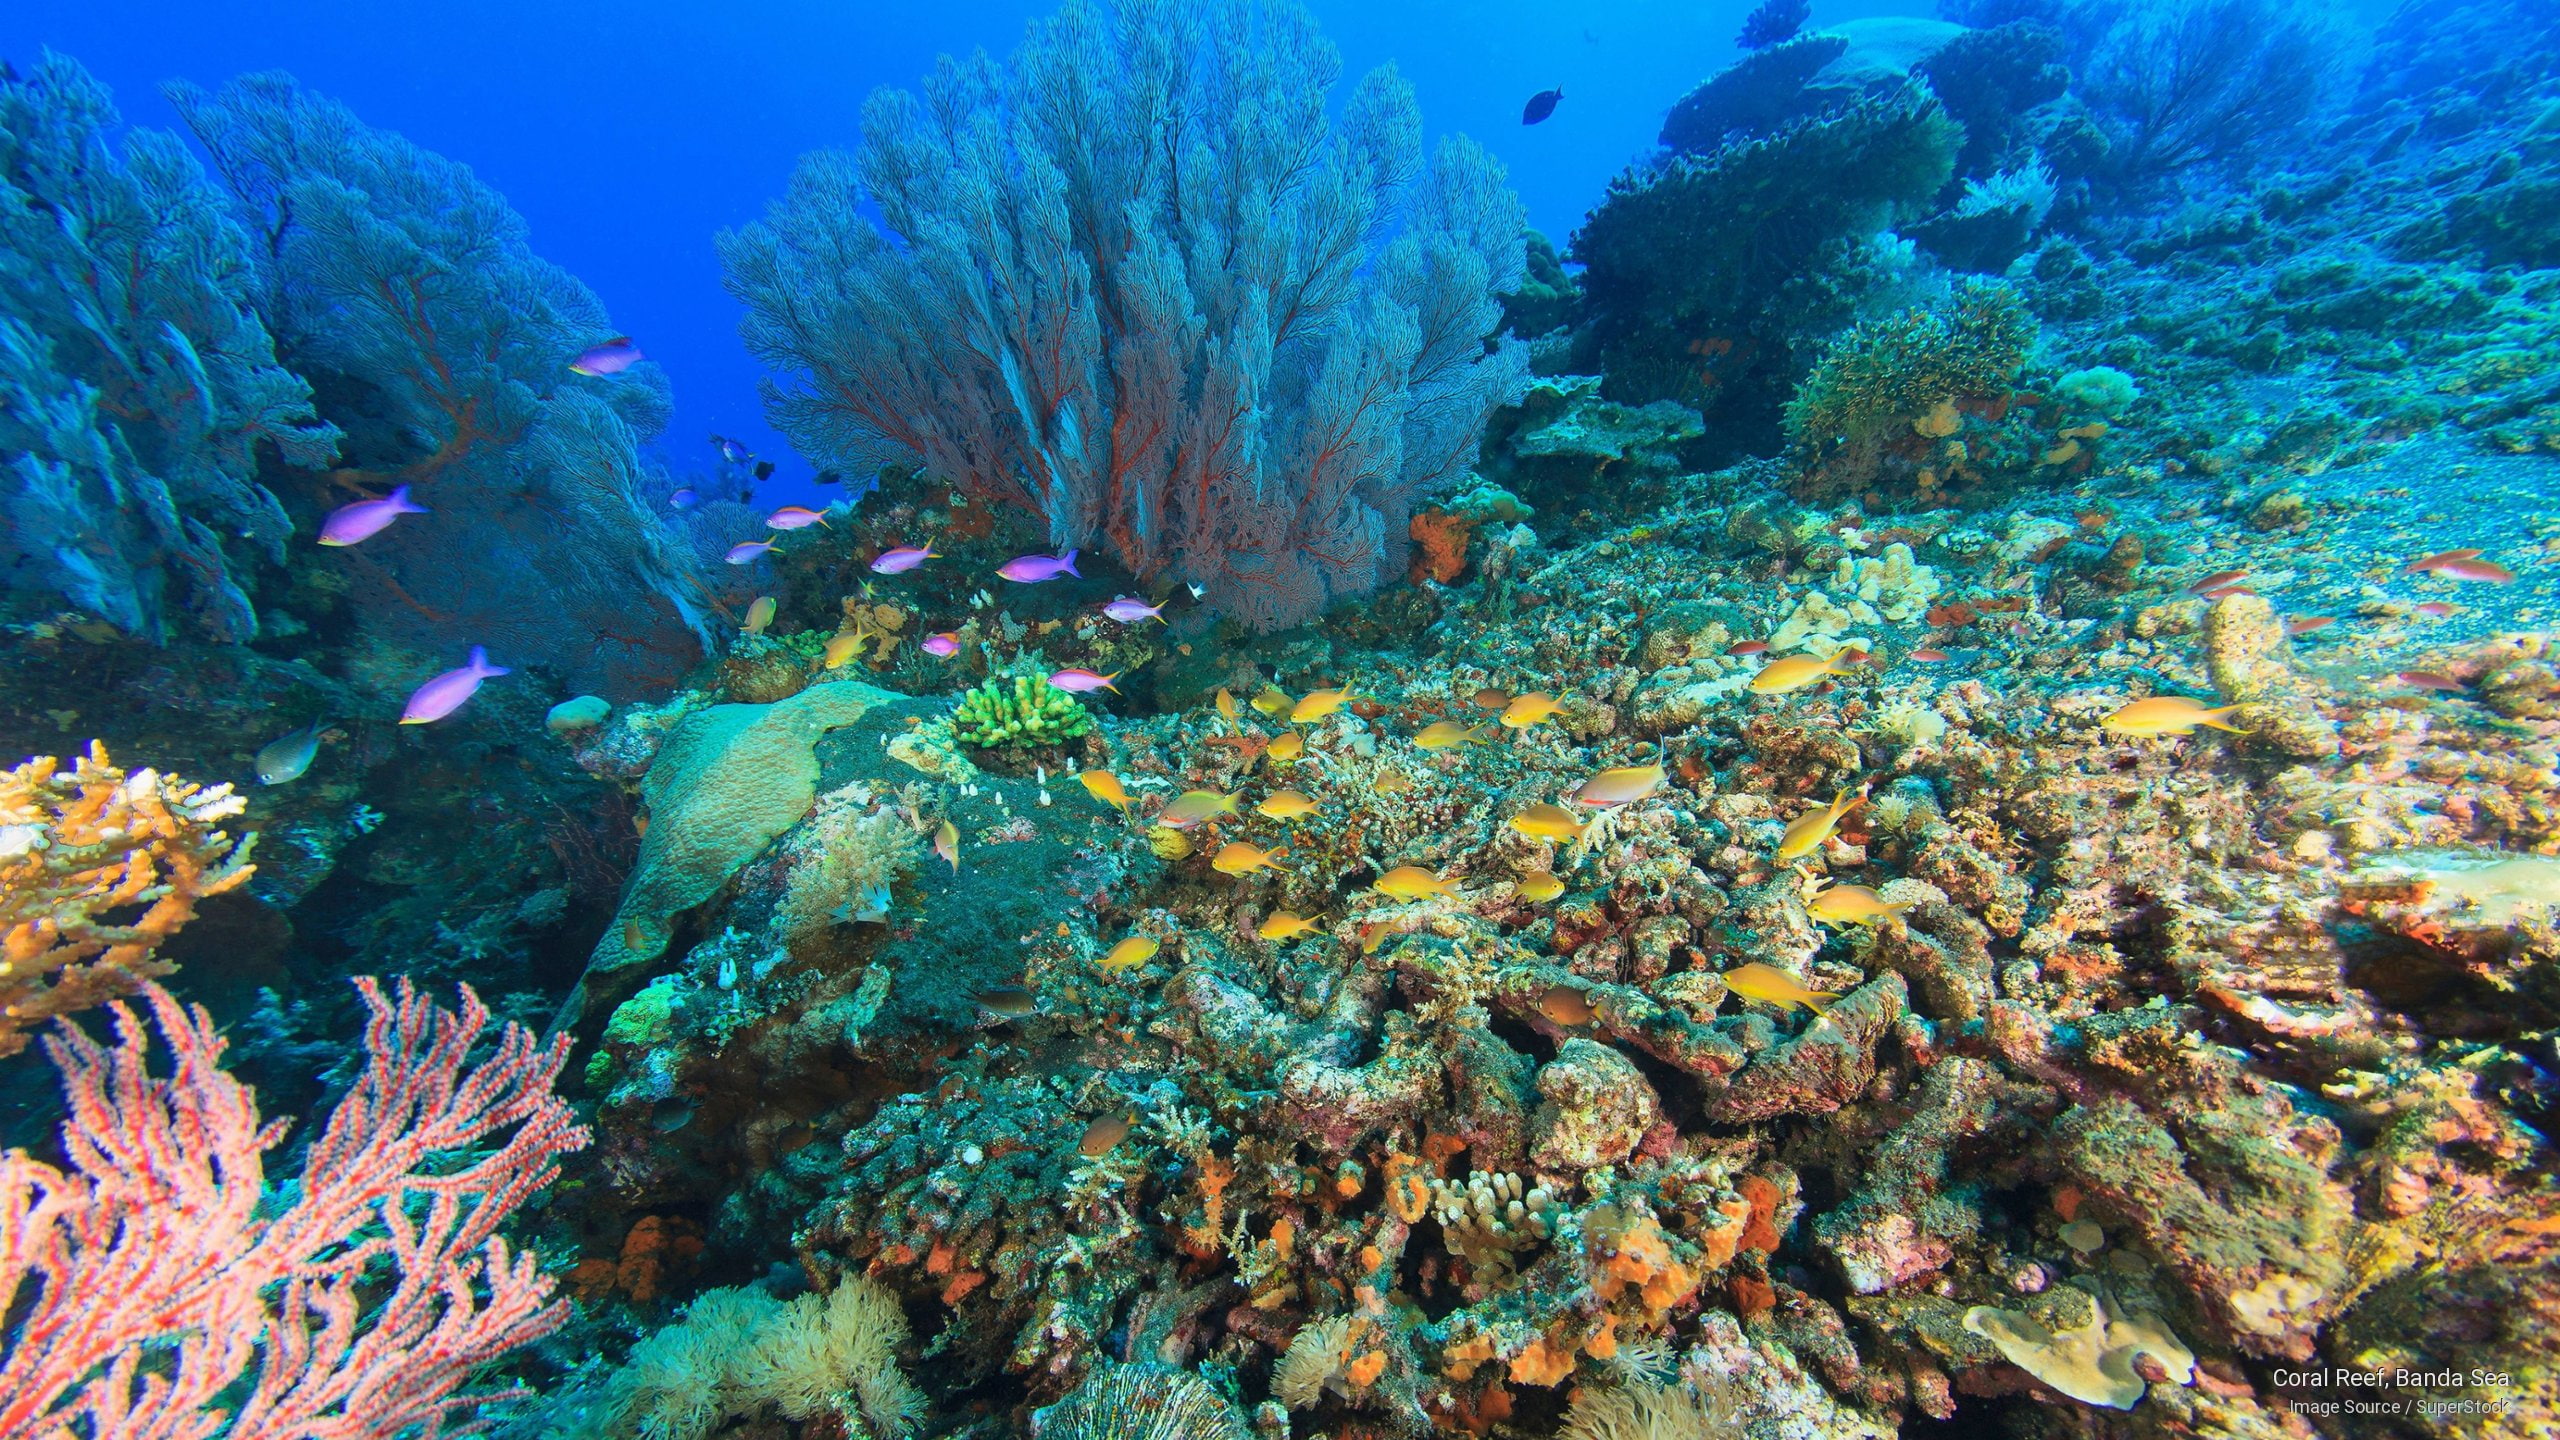 Coral Reef, Banda Sea, Ocean Life